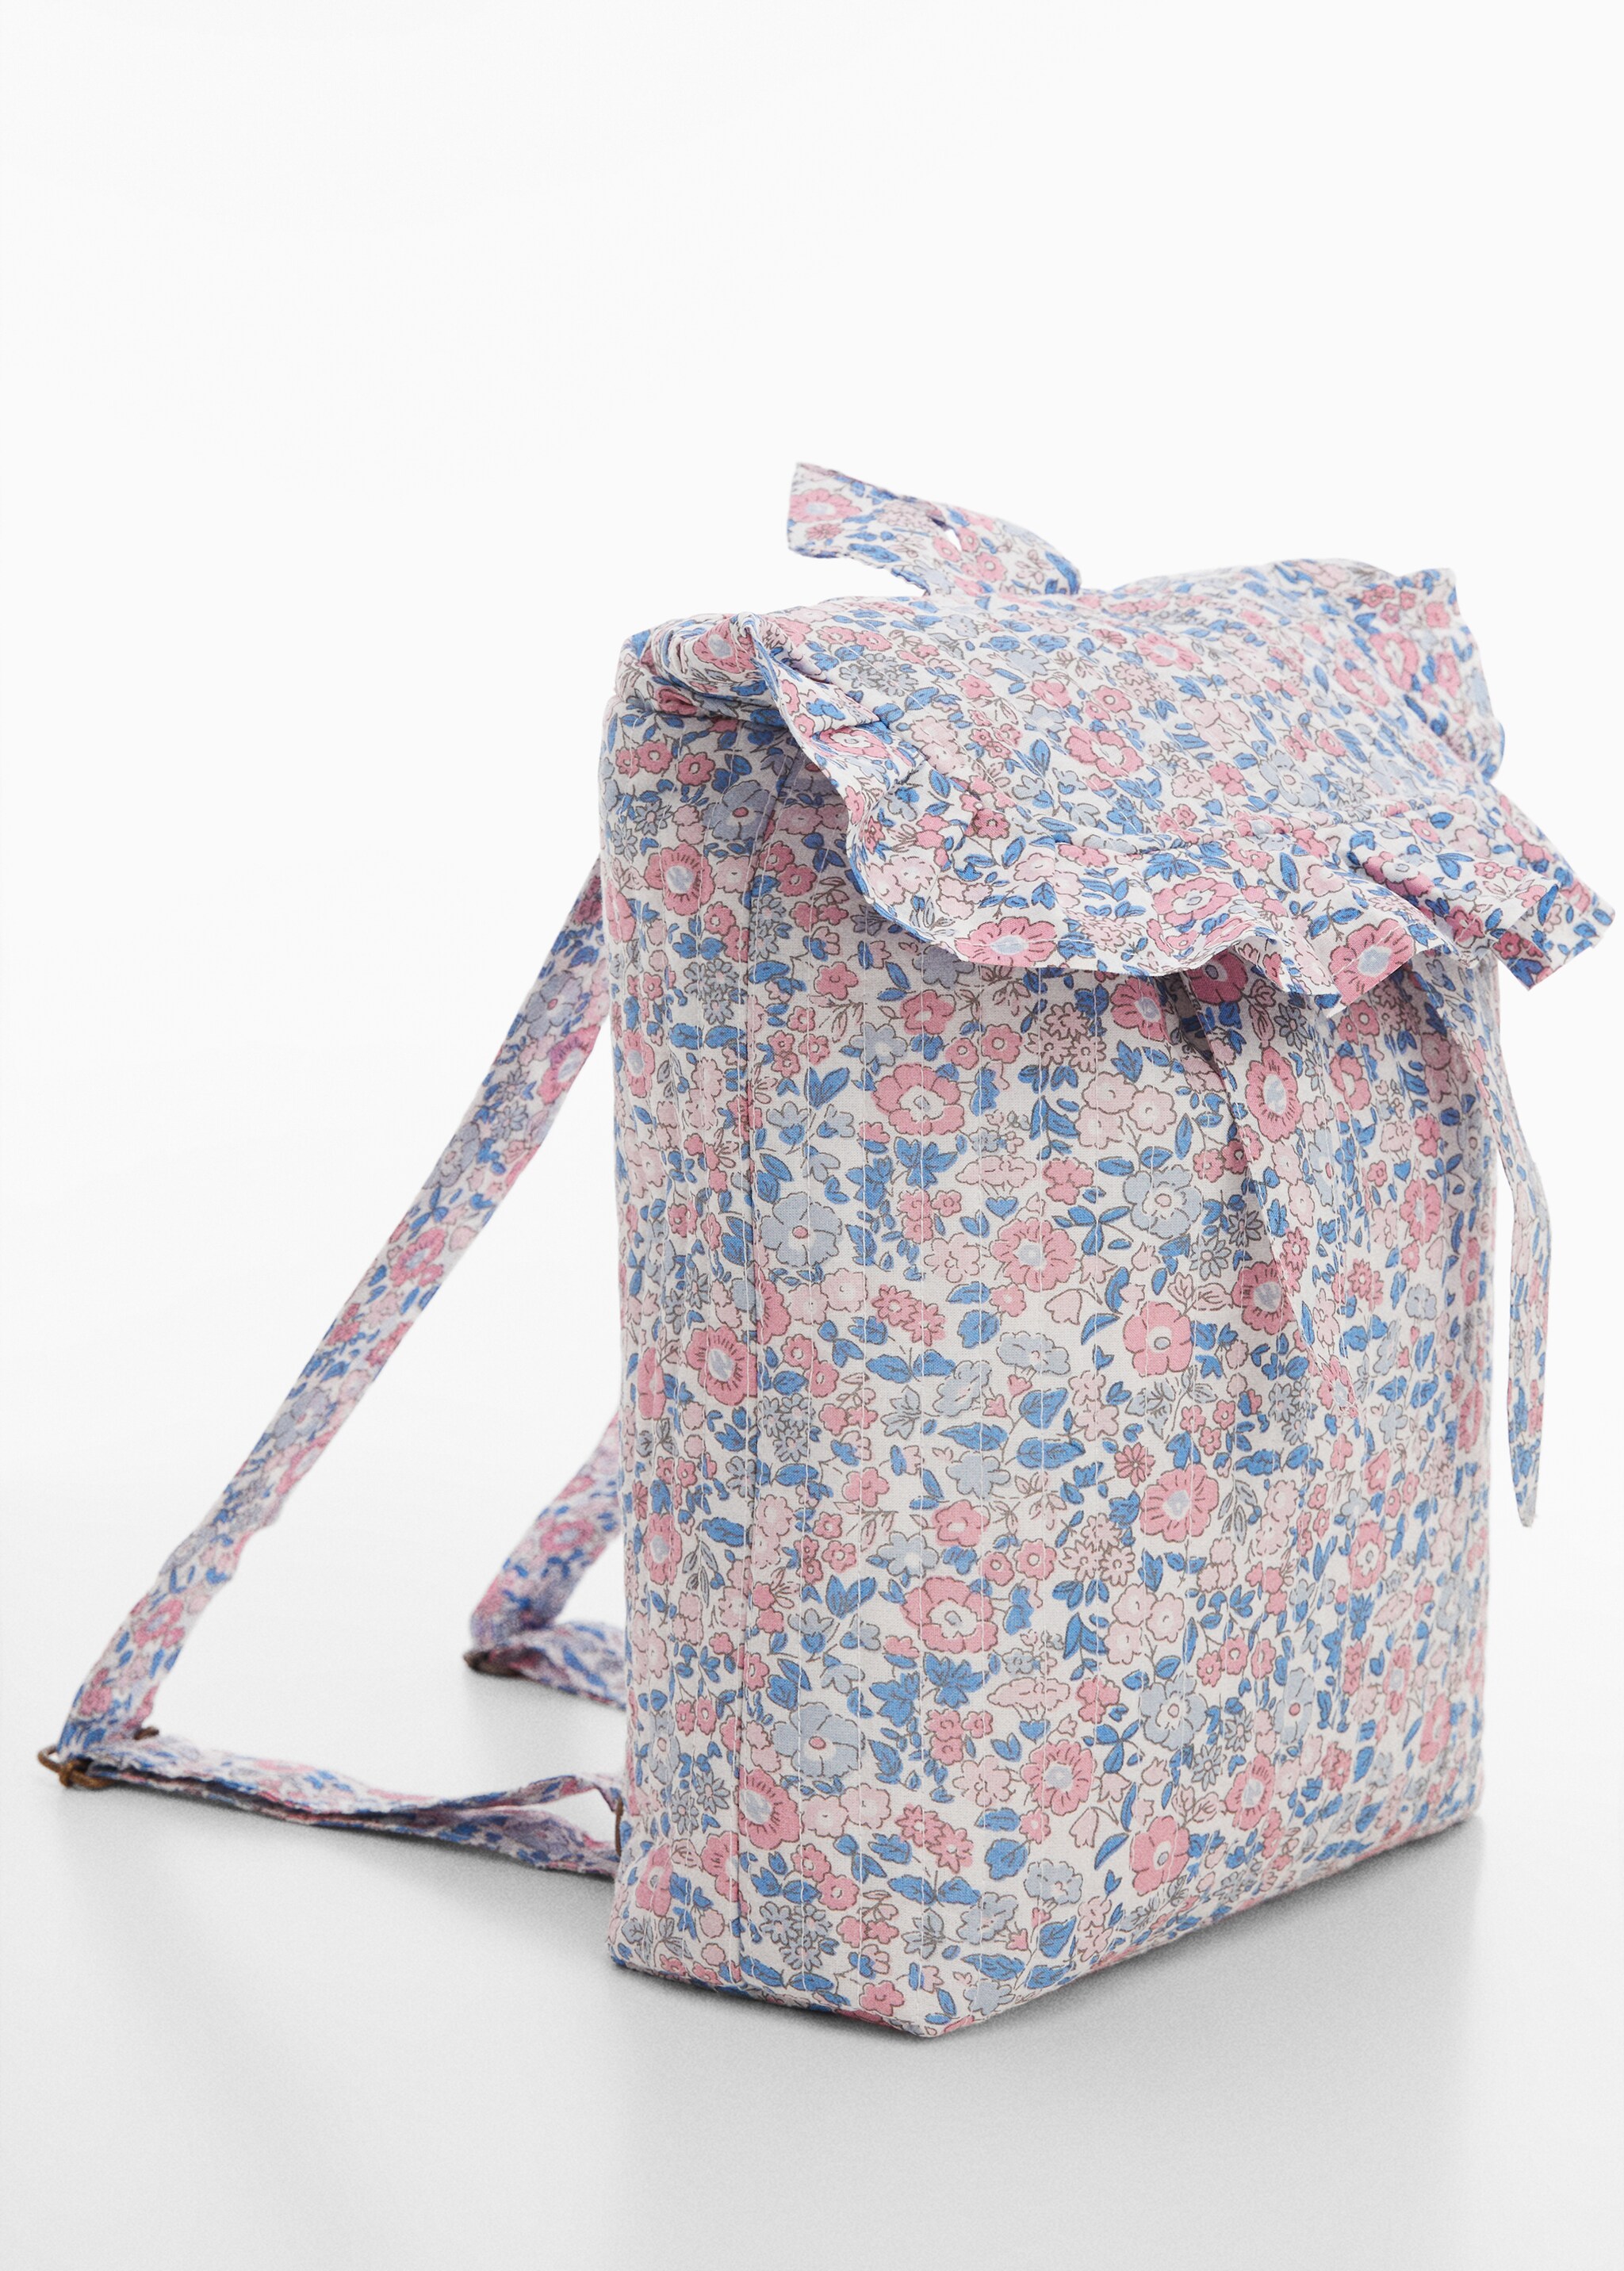 Floral printed backpack - Medium plane